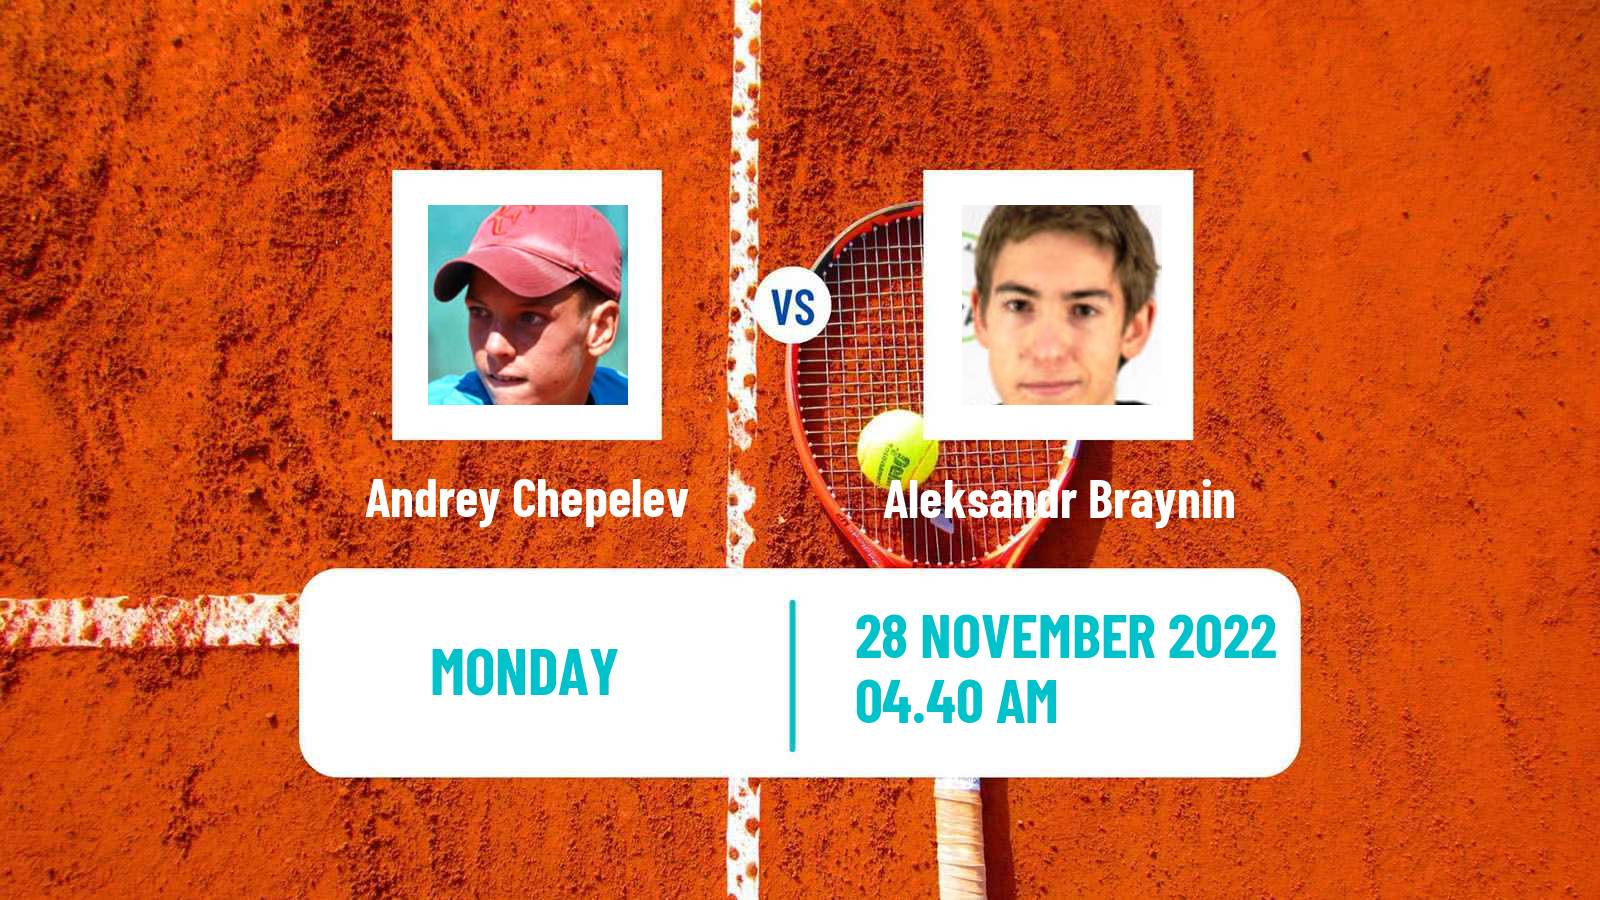 Tennis ATP Challenger Andrey Chepelev - Aleksandr Braynin